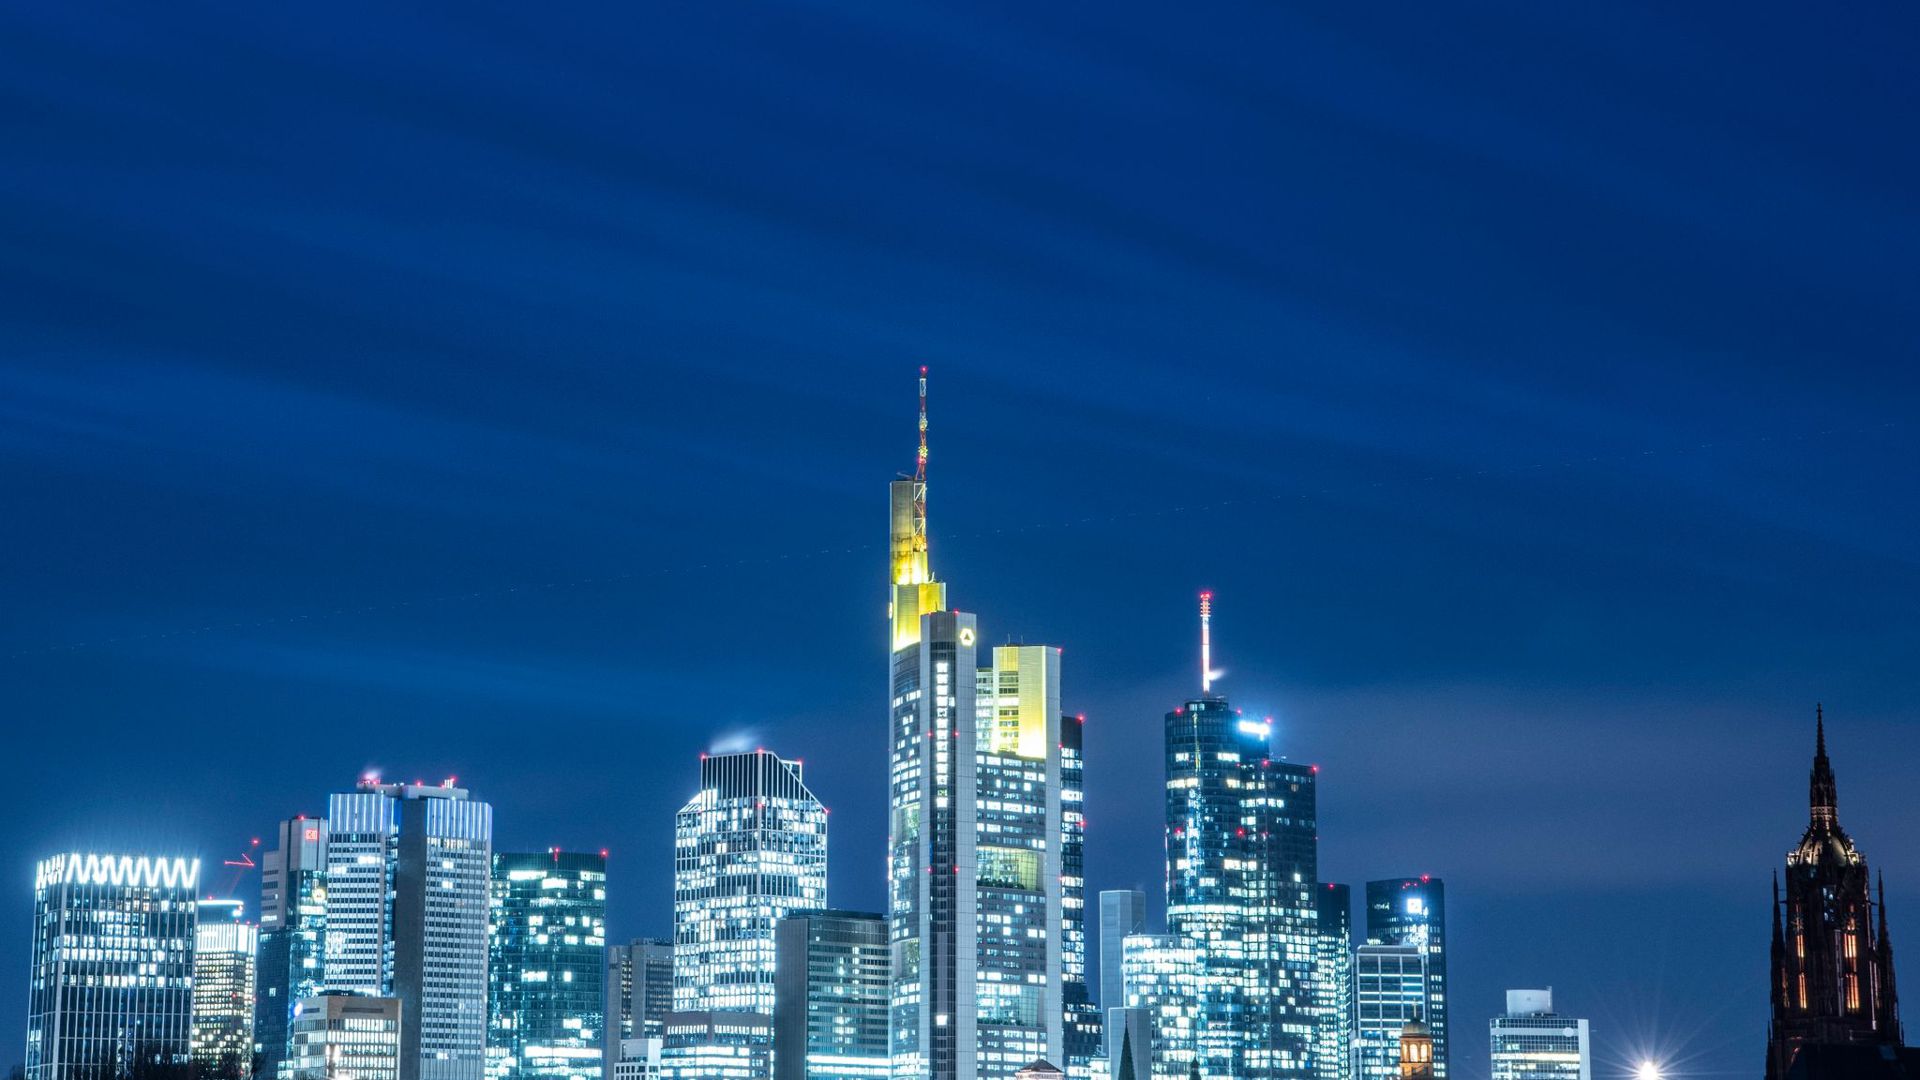 Die Lichter in den Büros der Frankfurter Bankentürme leuchten im letzten Licht des Tages.